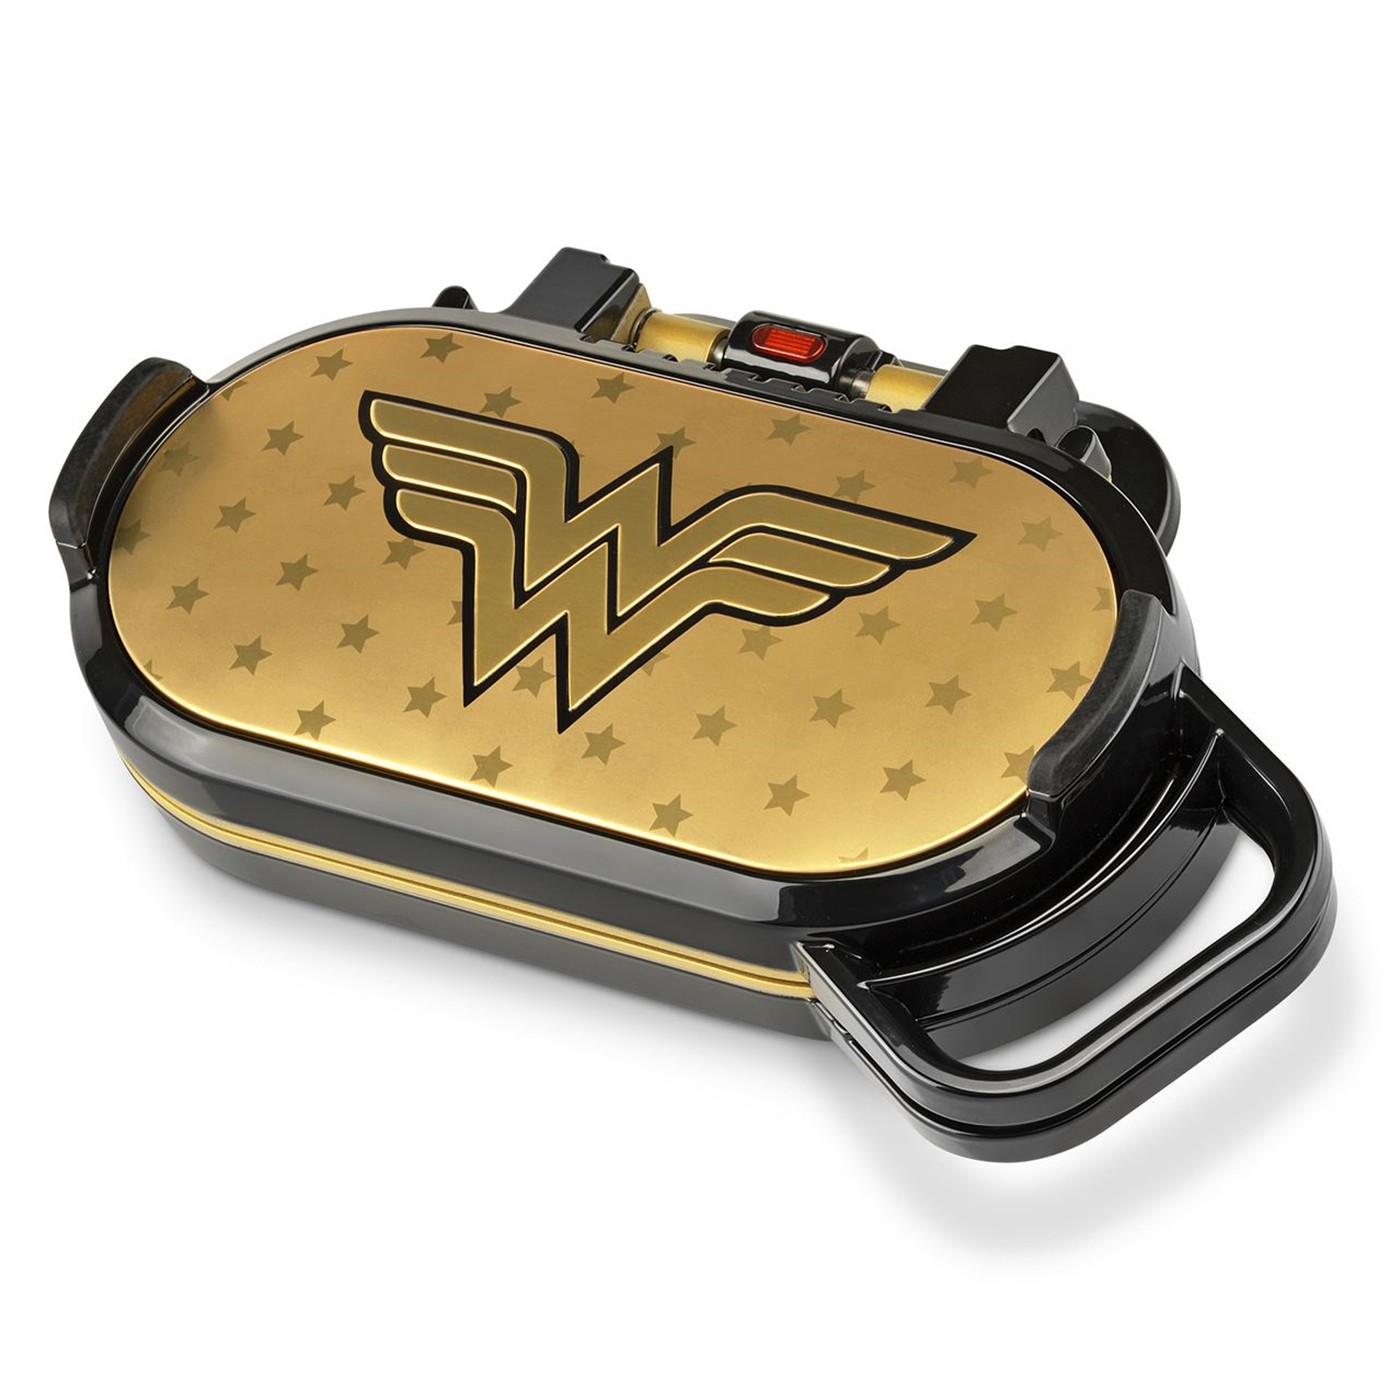 Wonder Woman Pancake Maker